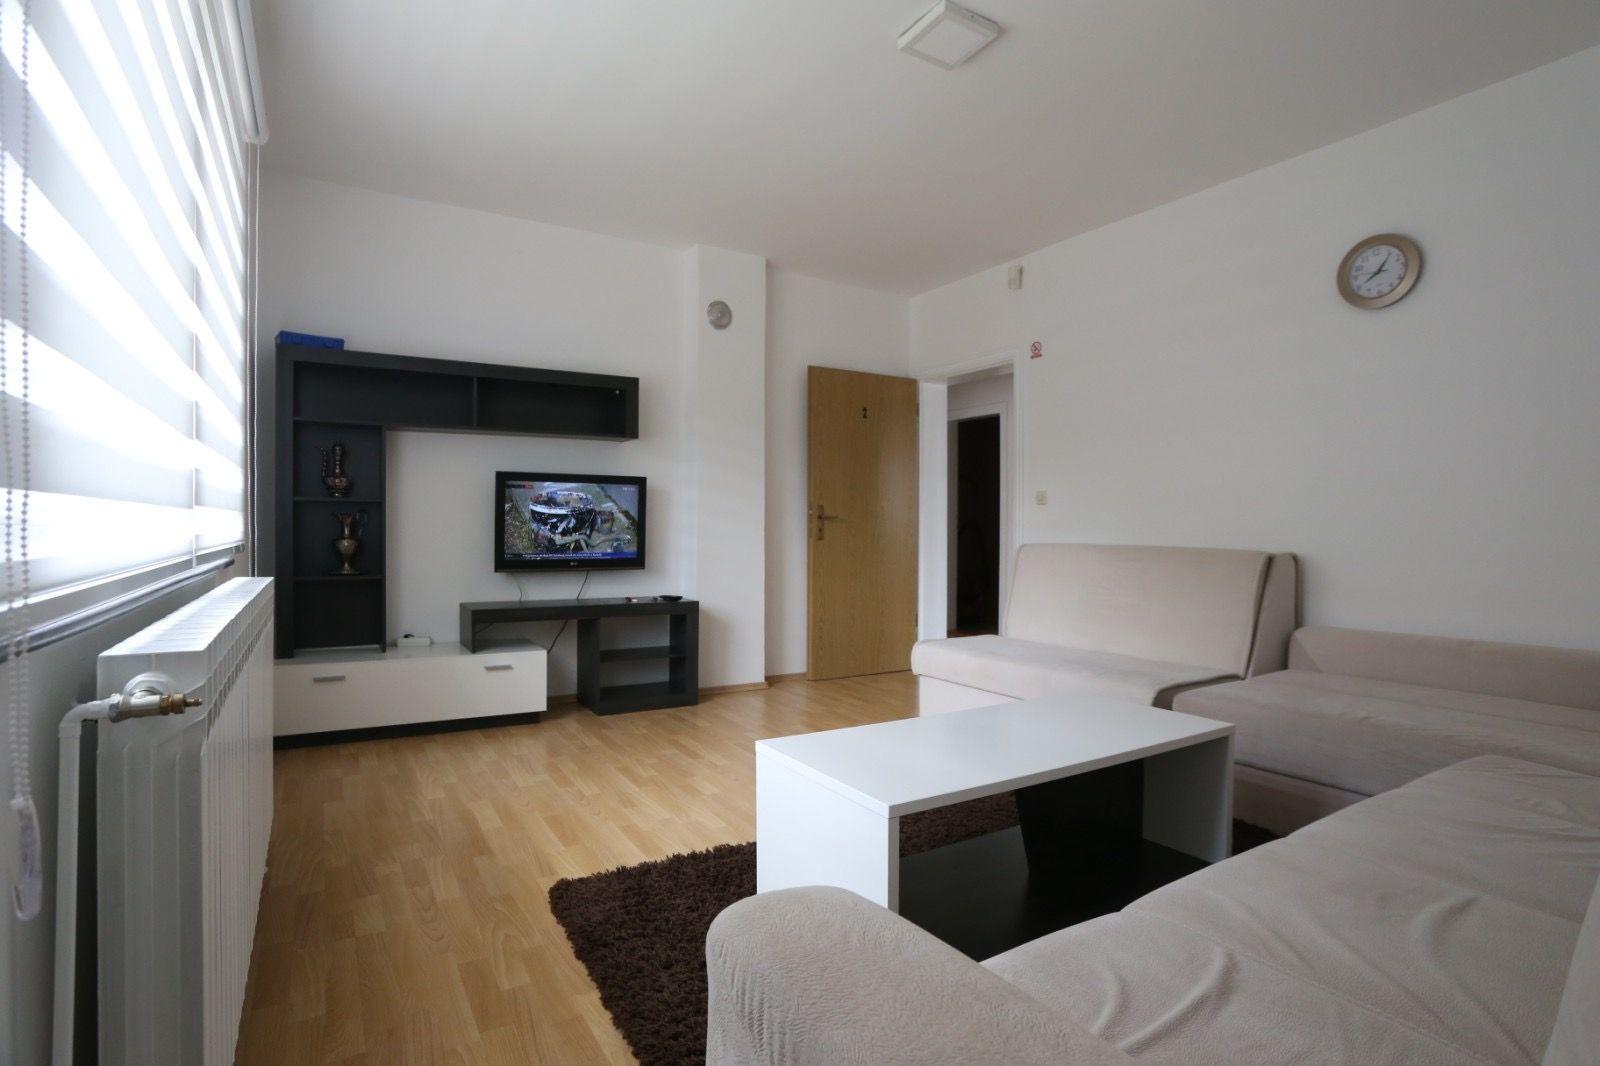 Ferienwohnung für 6 Personen ca. 105 m²  Ferienhaus in Bosnien